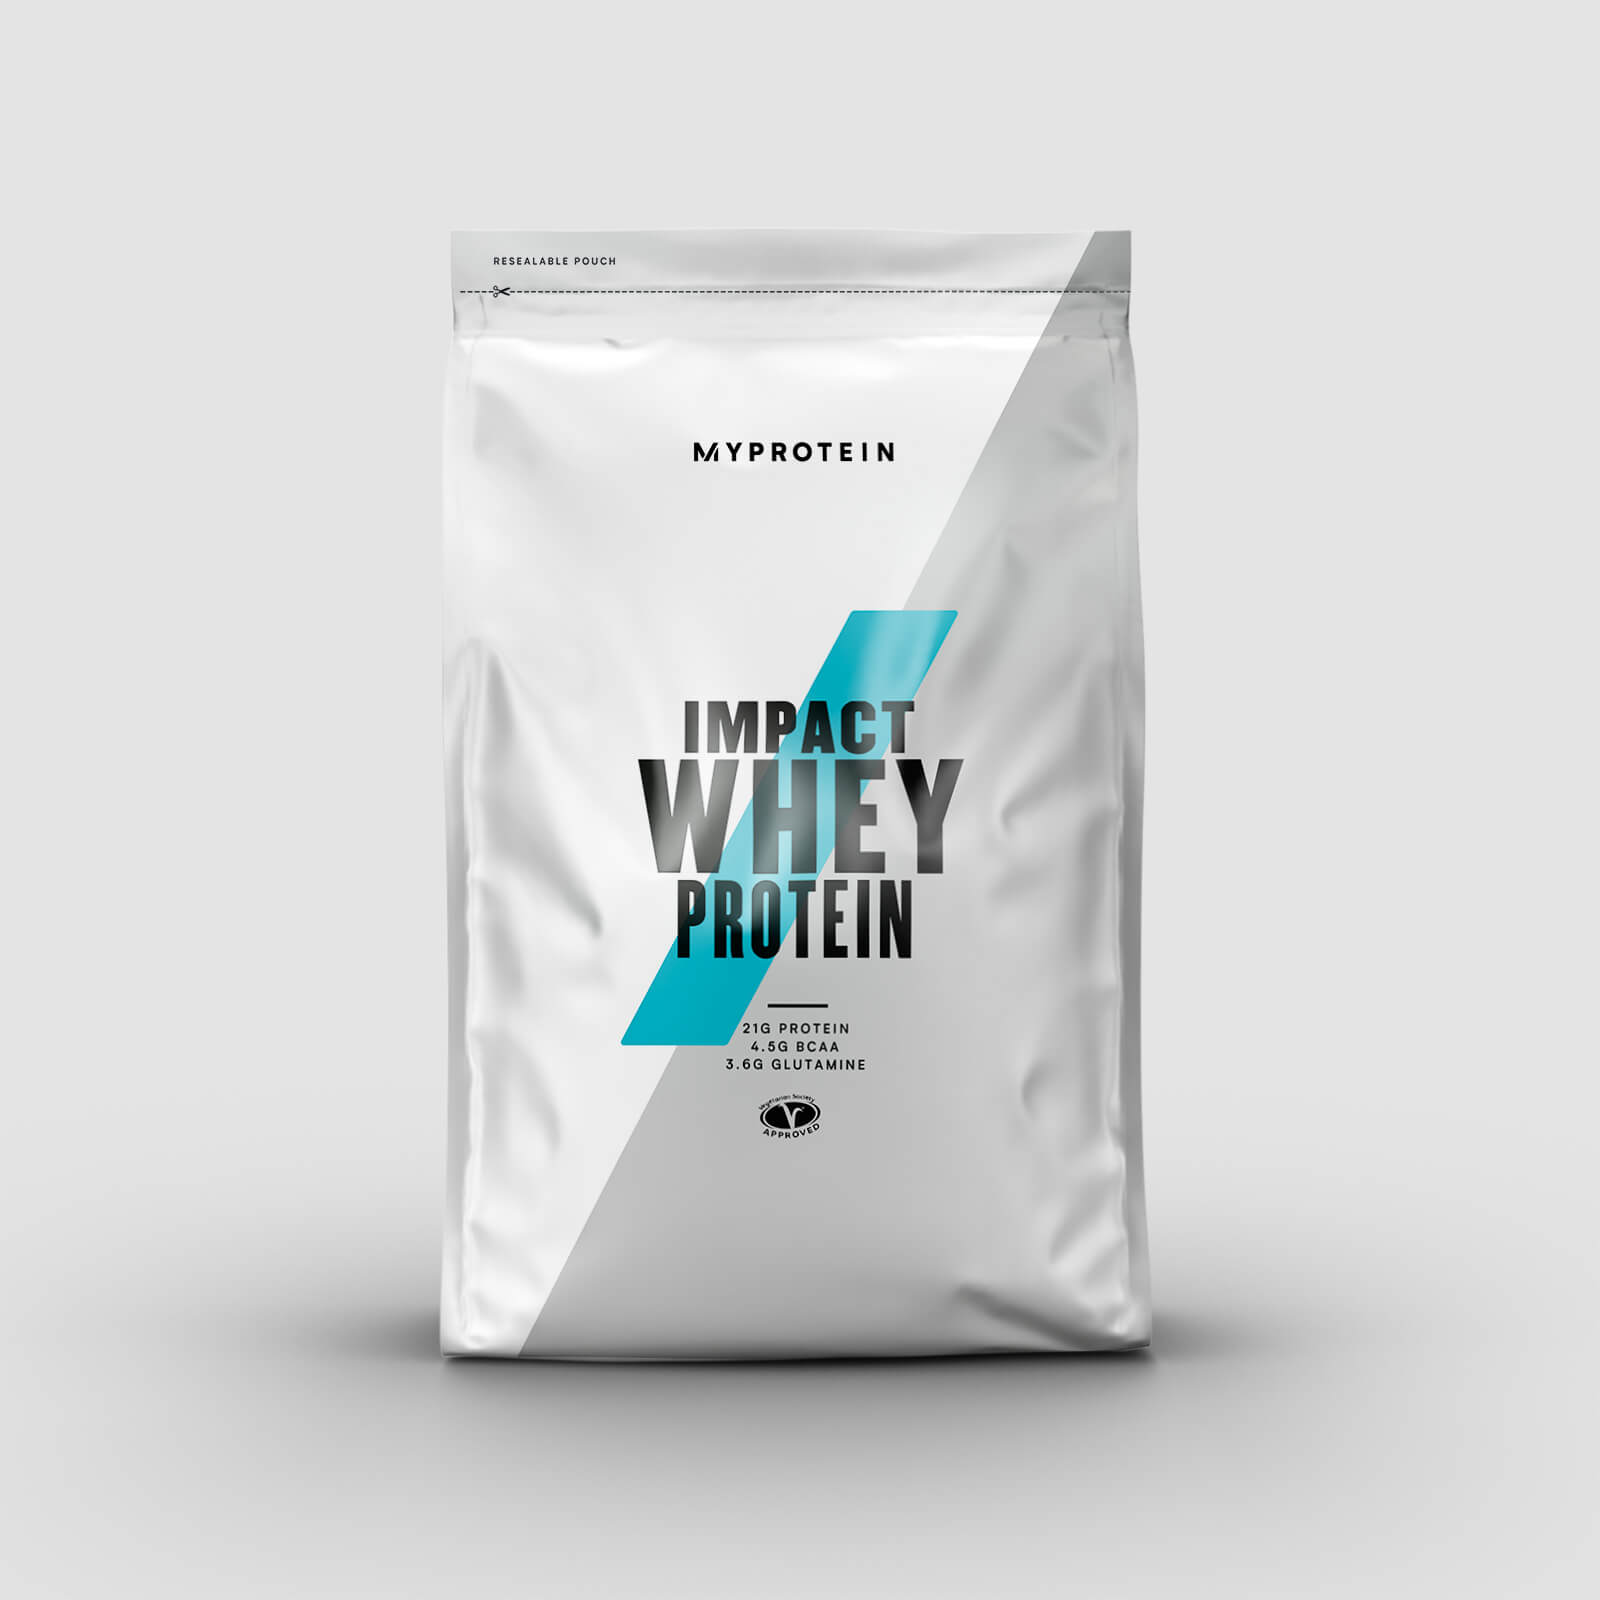 Myprotein Whey Protein (Myseprotein) - 500g - Dark Chocolate & Salted Caramel